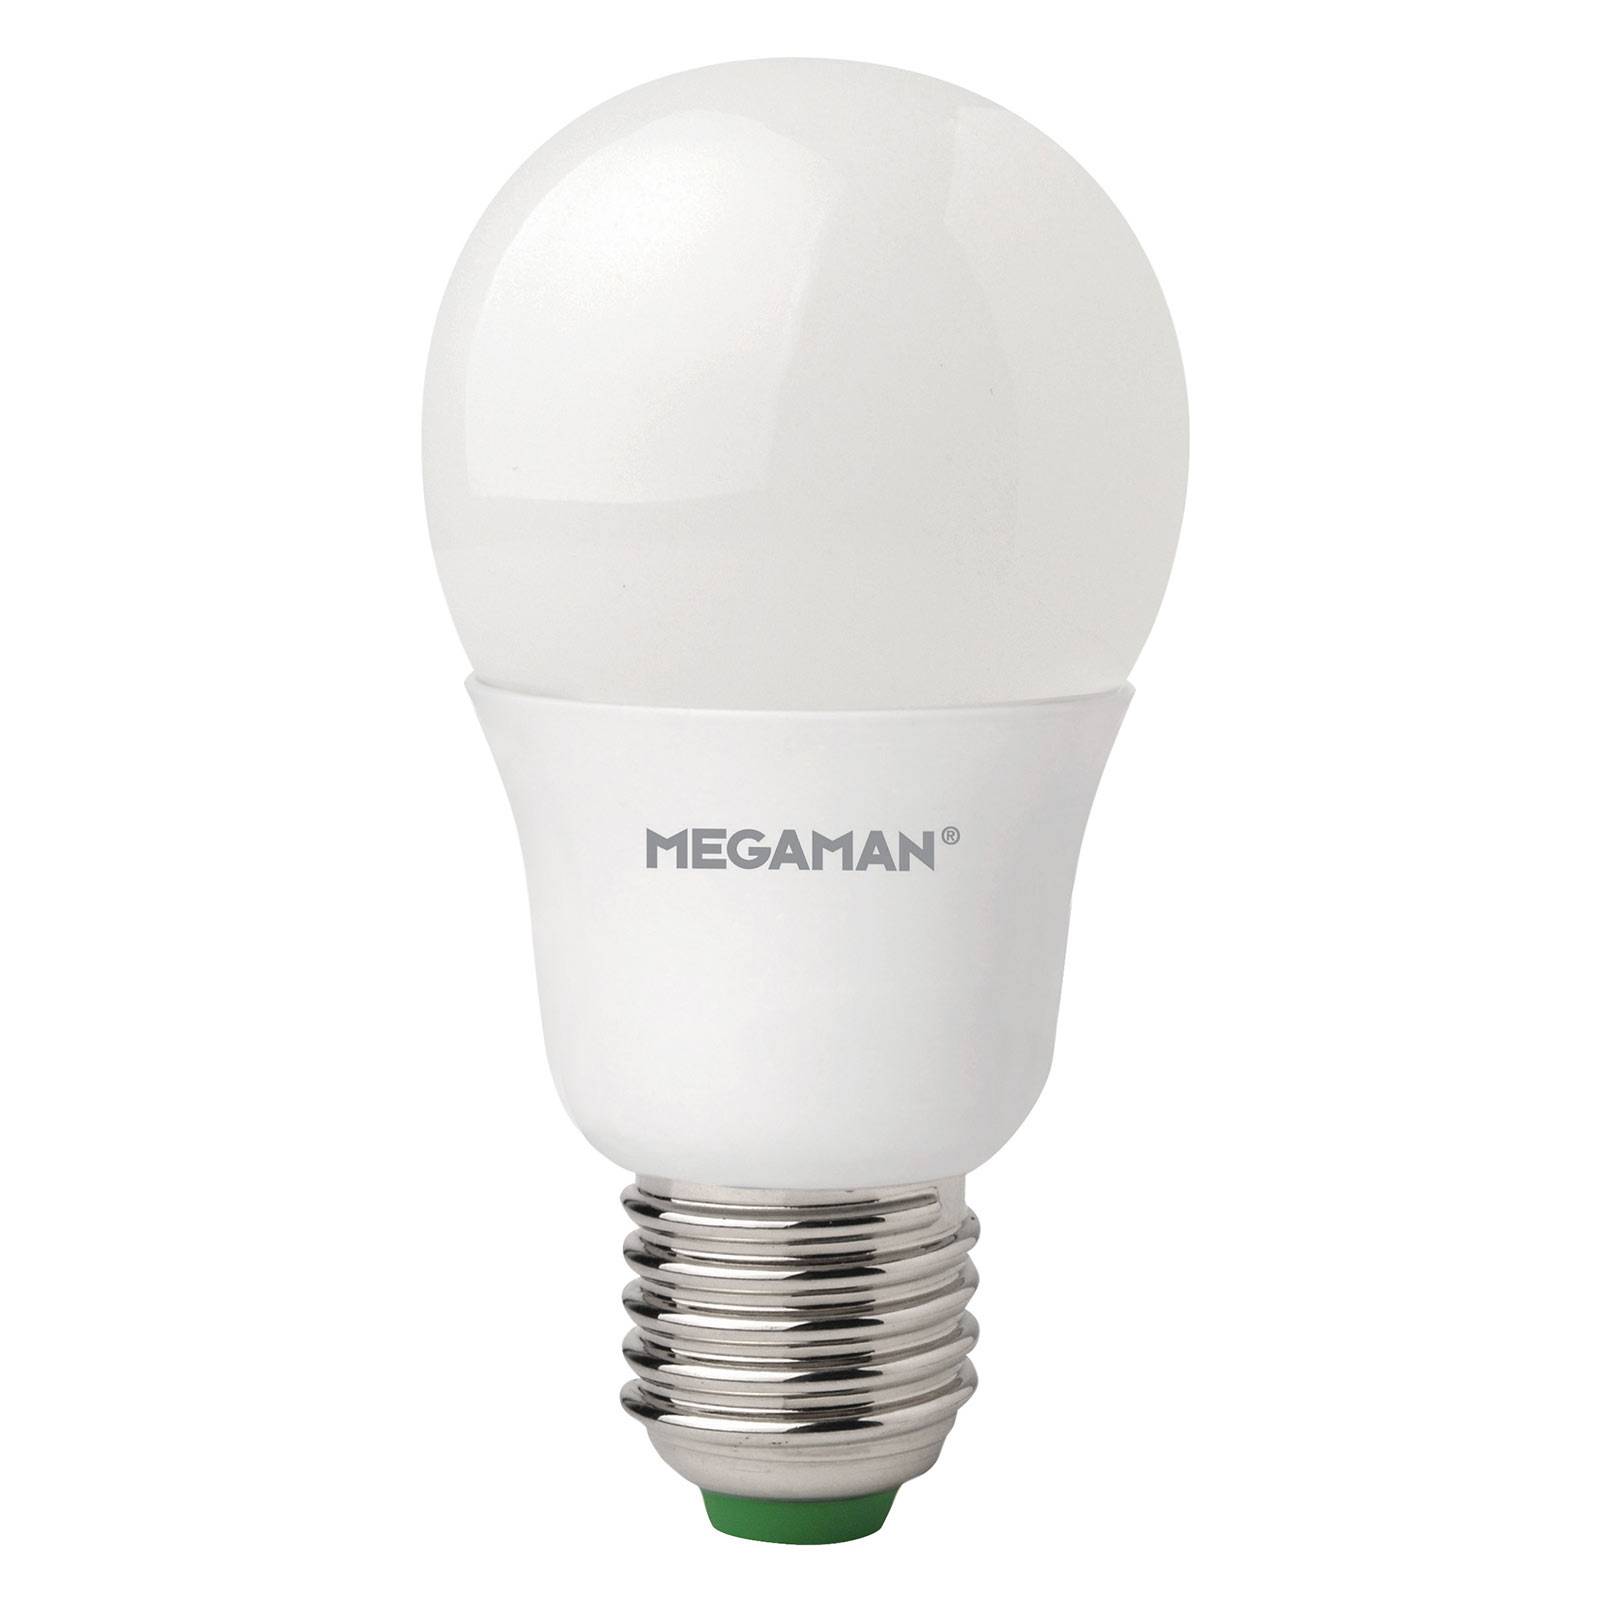 Megaman Ampoule LED E27 A60 9,5 W, blanc chaud